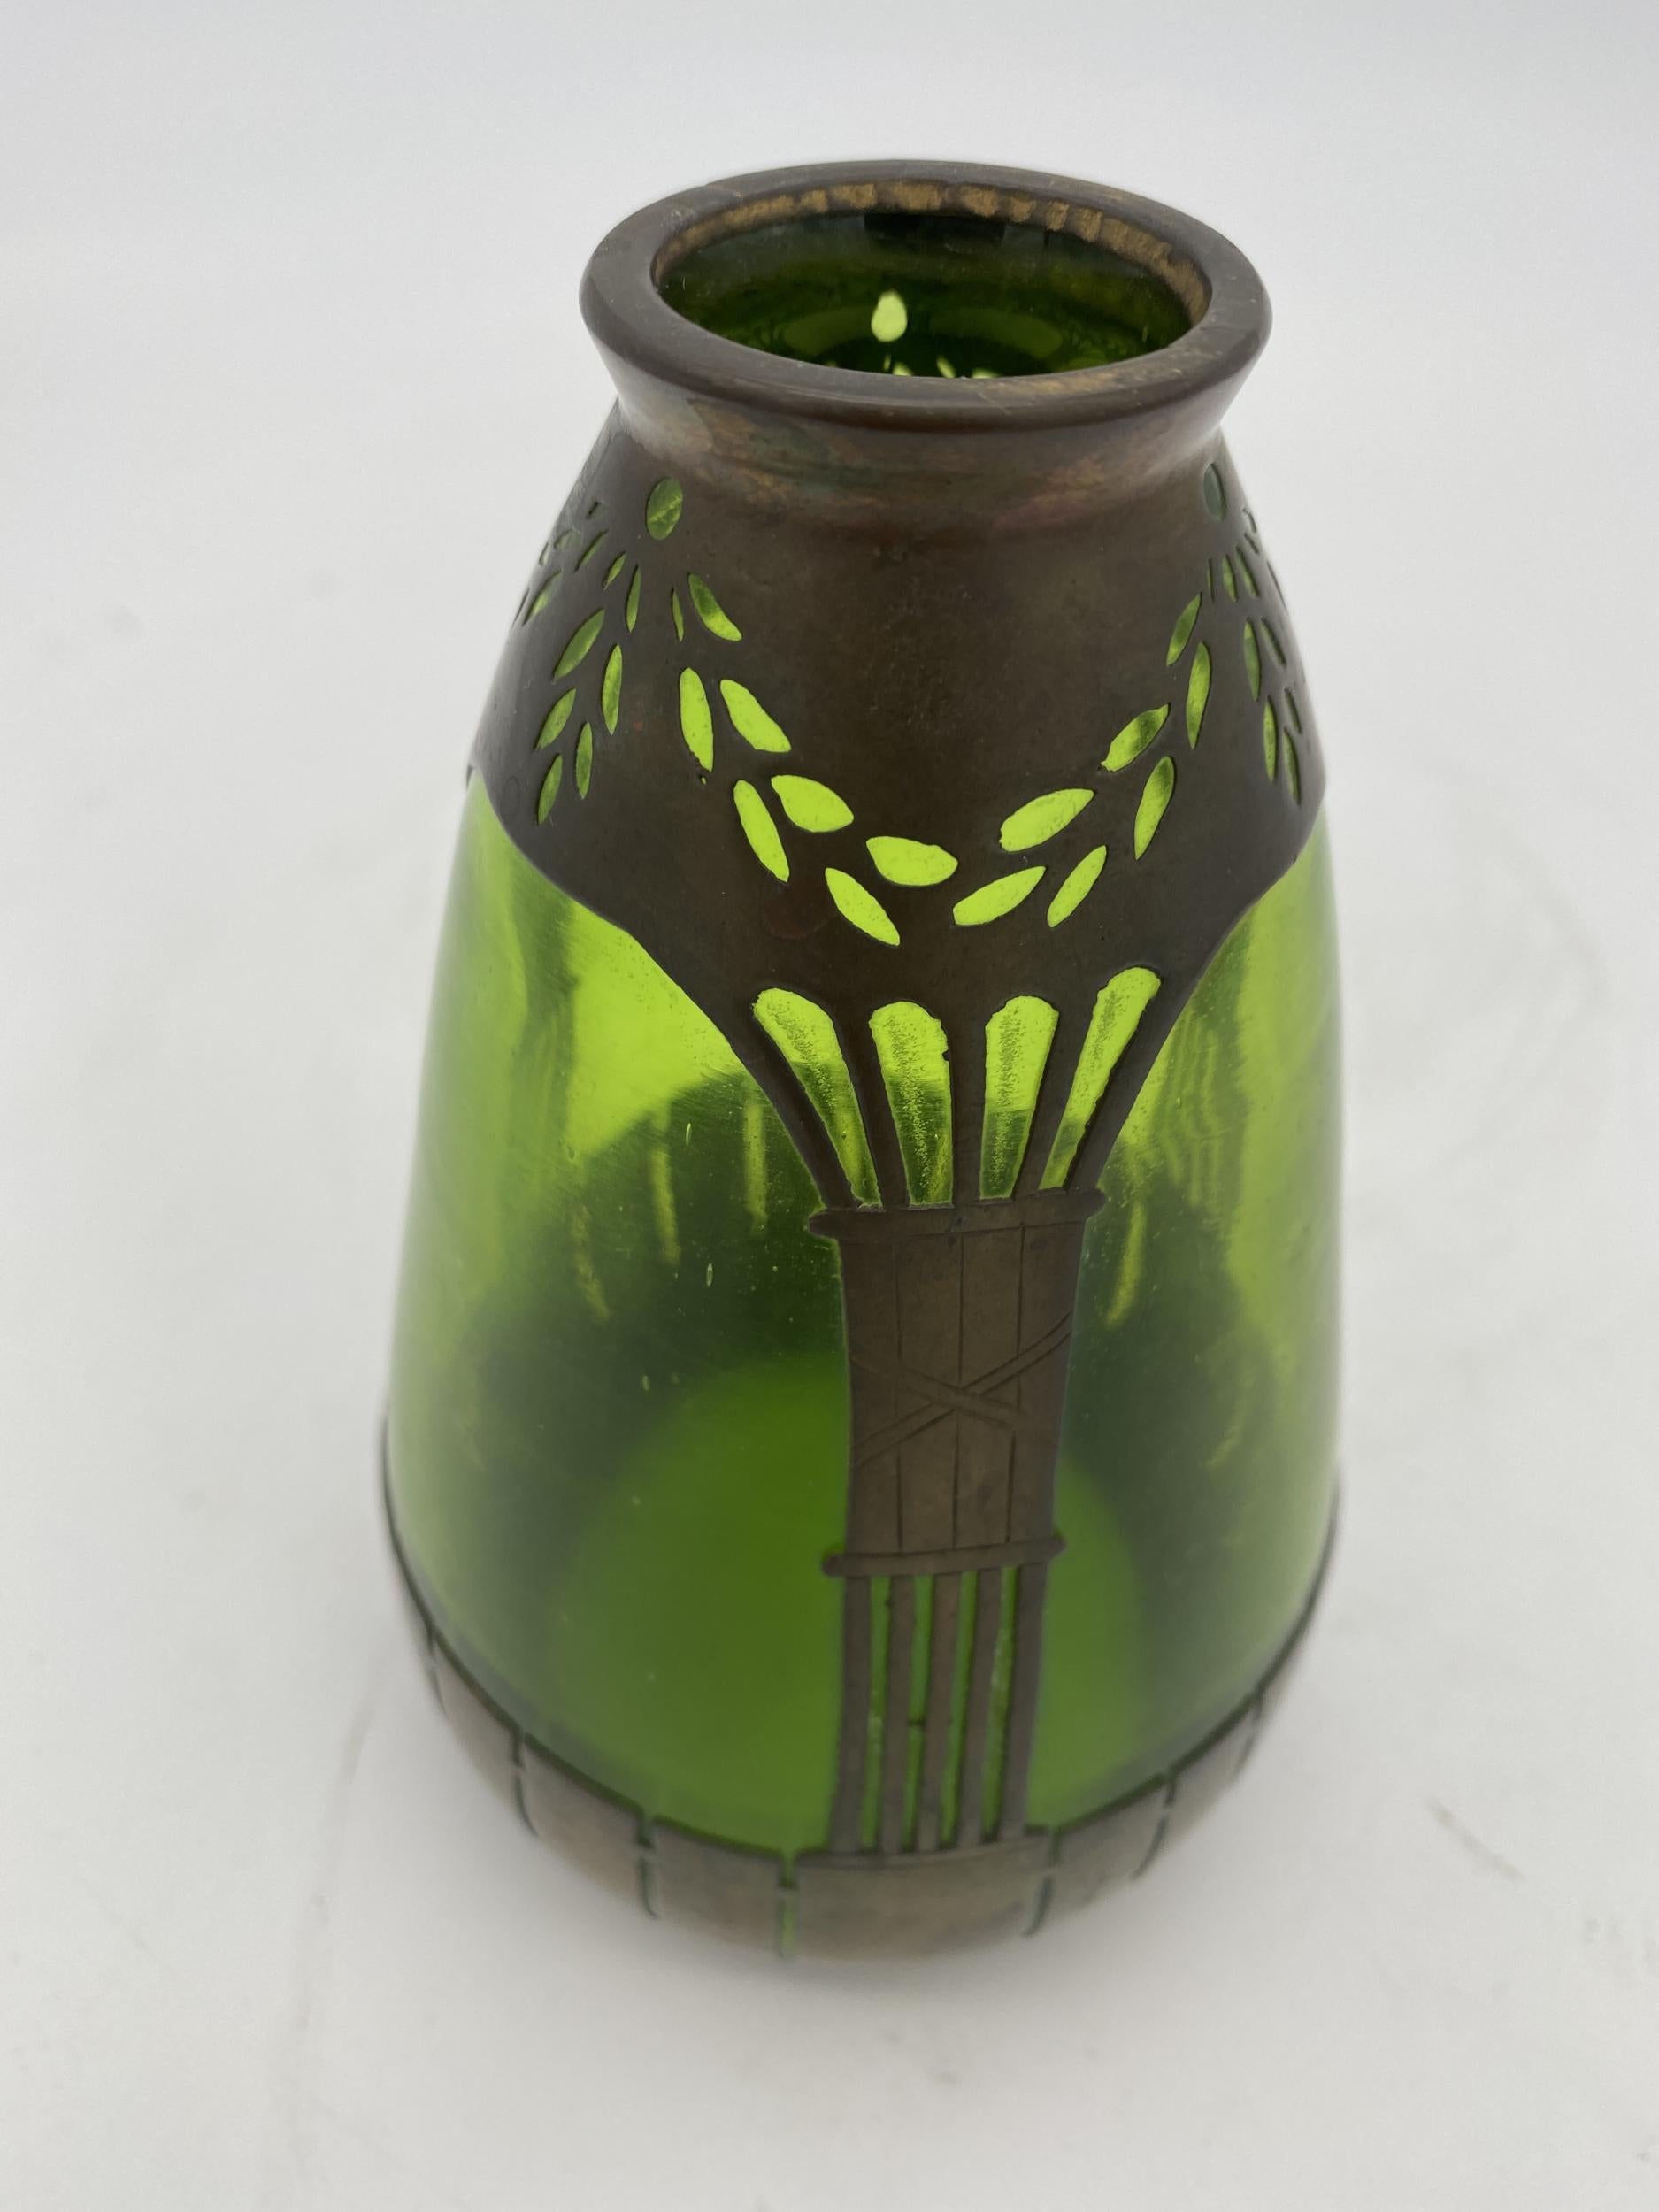 Französische Vase aus Kupfer und grünem Glas im Jugendstil mit mundgeblasenem Grün und Kupferrahmen.

Um 1900.